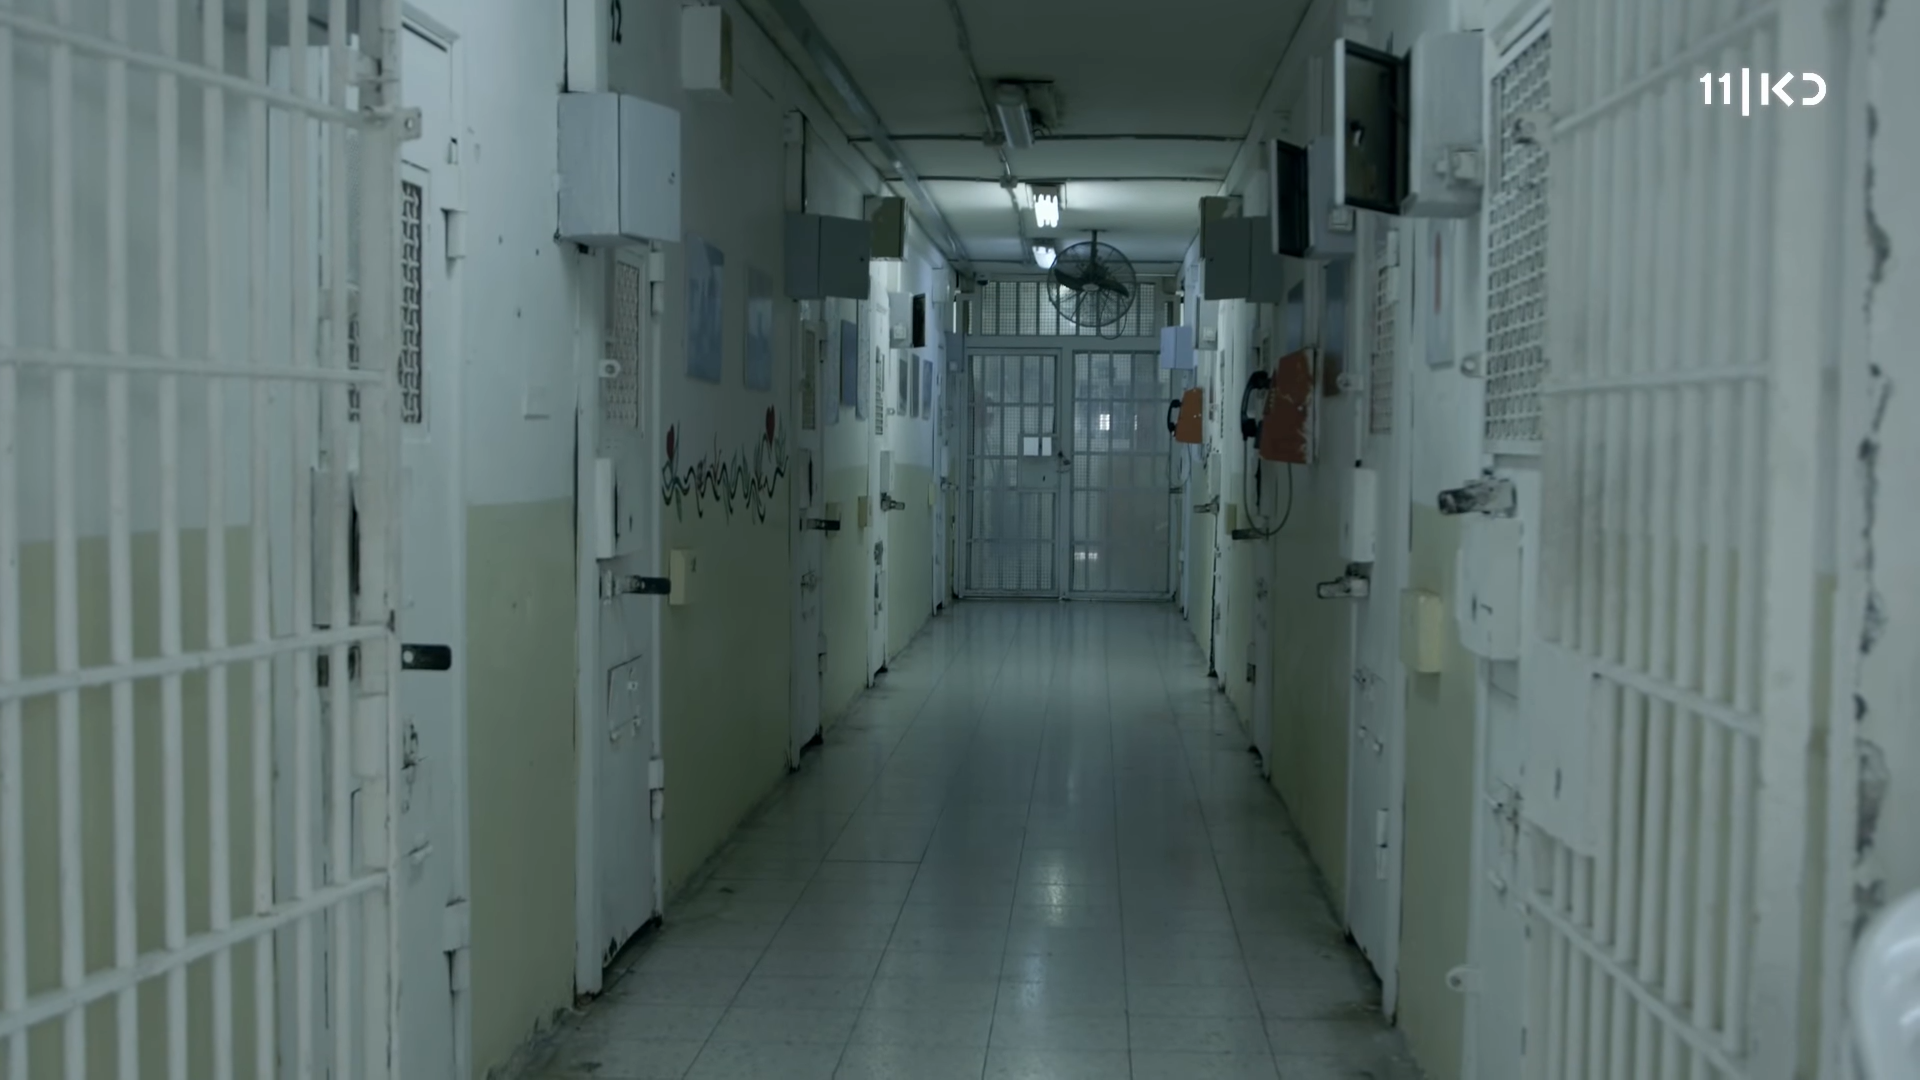 פנים של כלא, תאים מסורגים ומסדרון ארוך